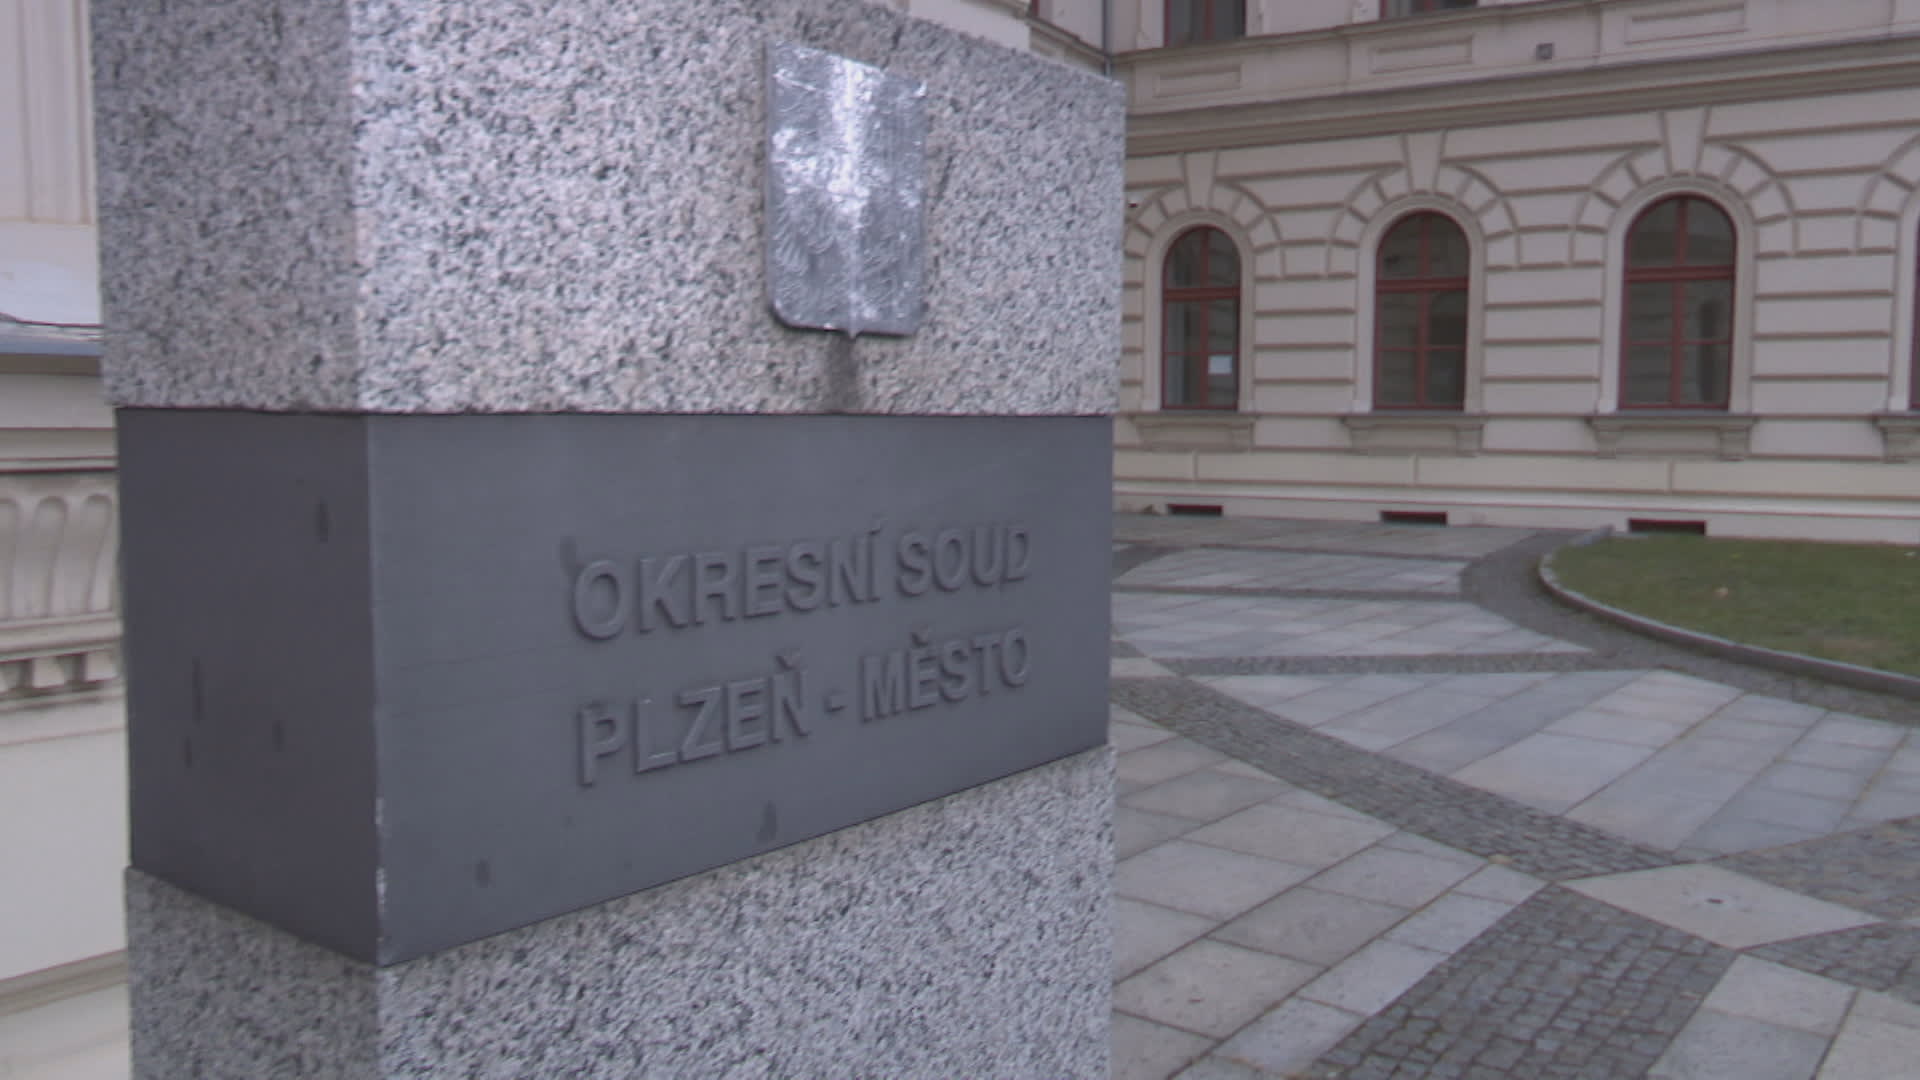 Okresní soud Plzeň-město